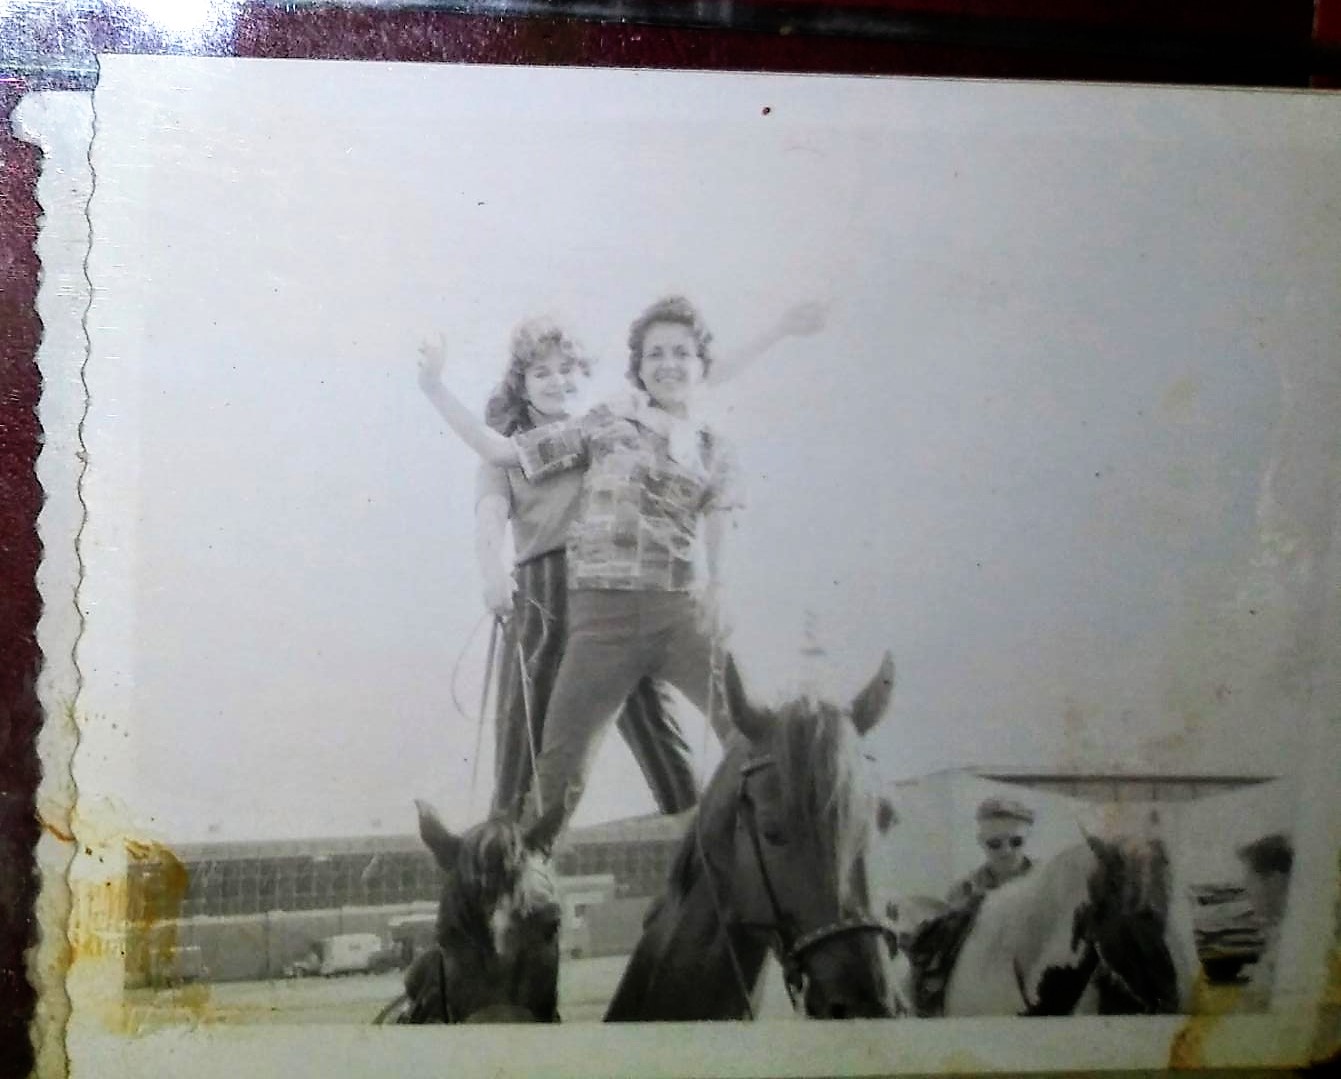 ME & MOM PHOTOS MOM ON HORSEBACK TRICK RIDING 1A.jpg